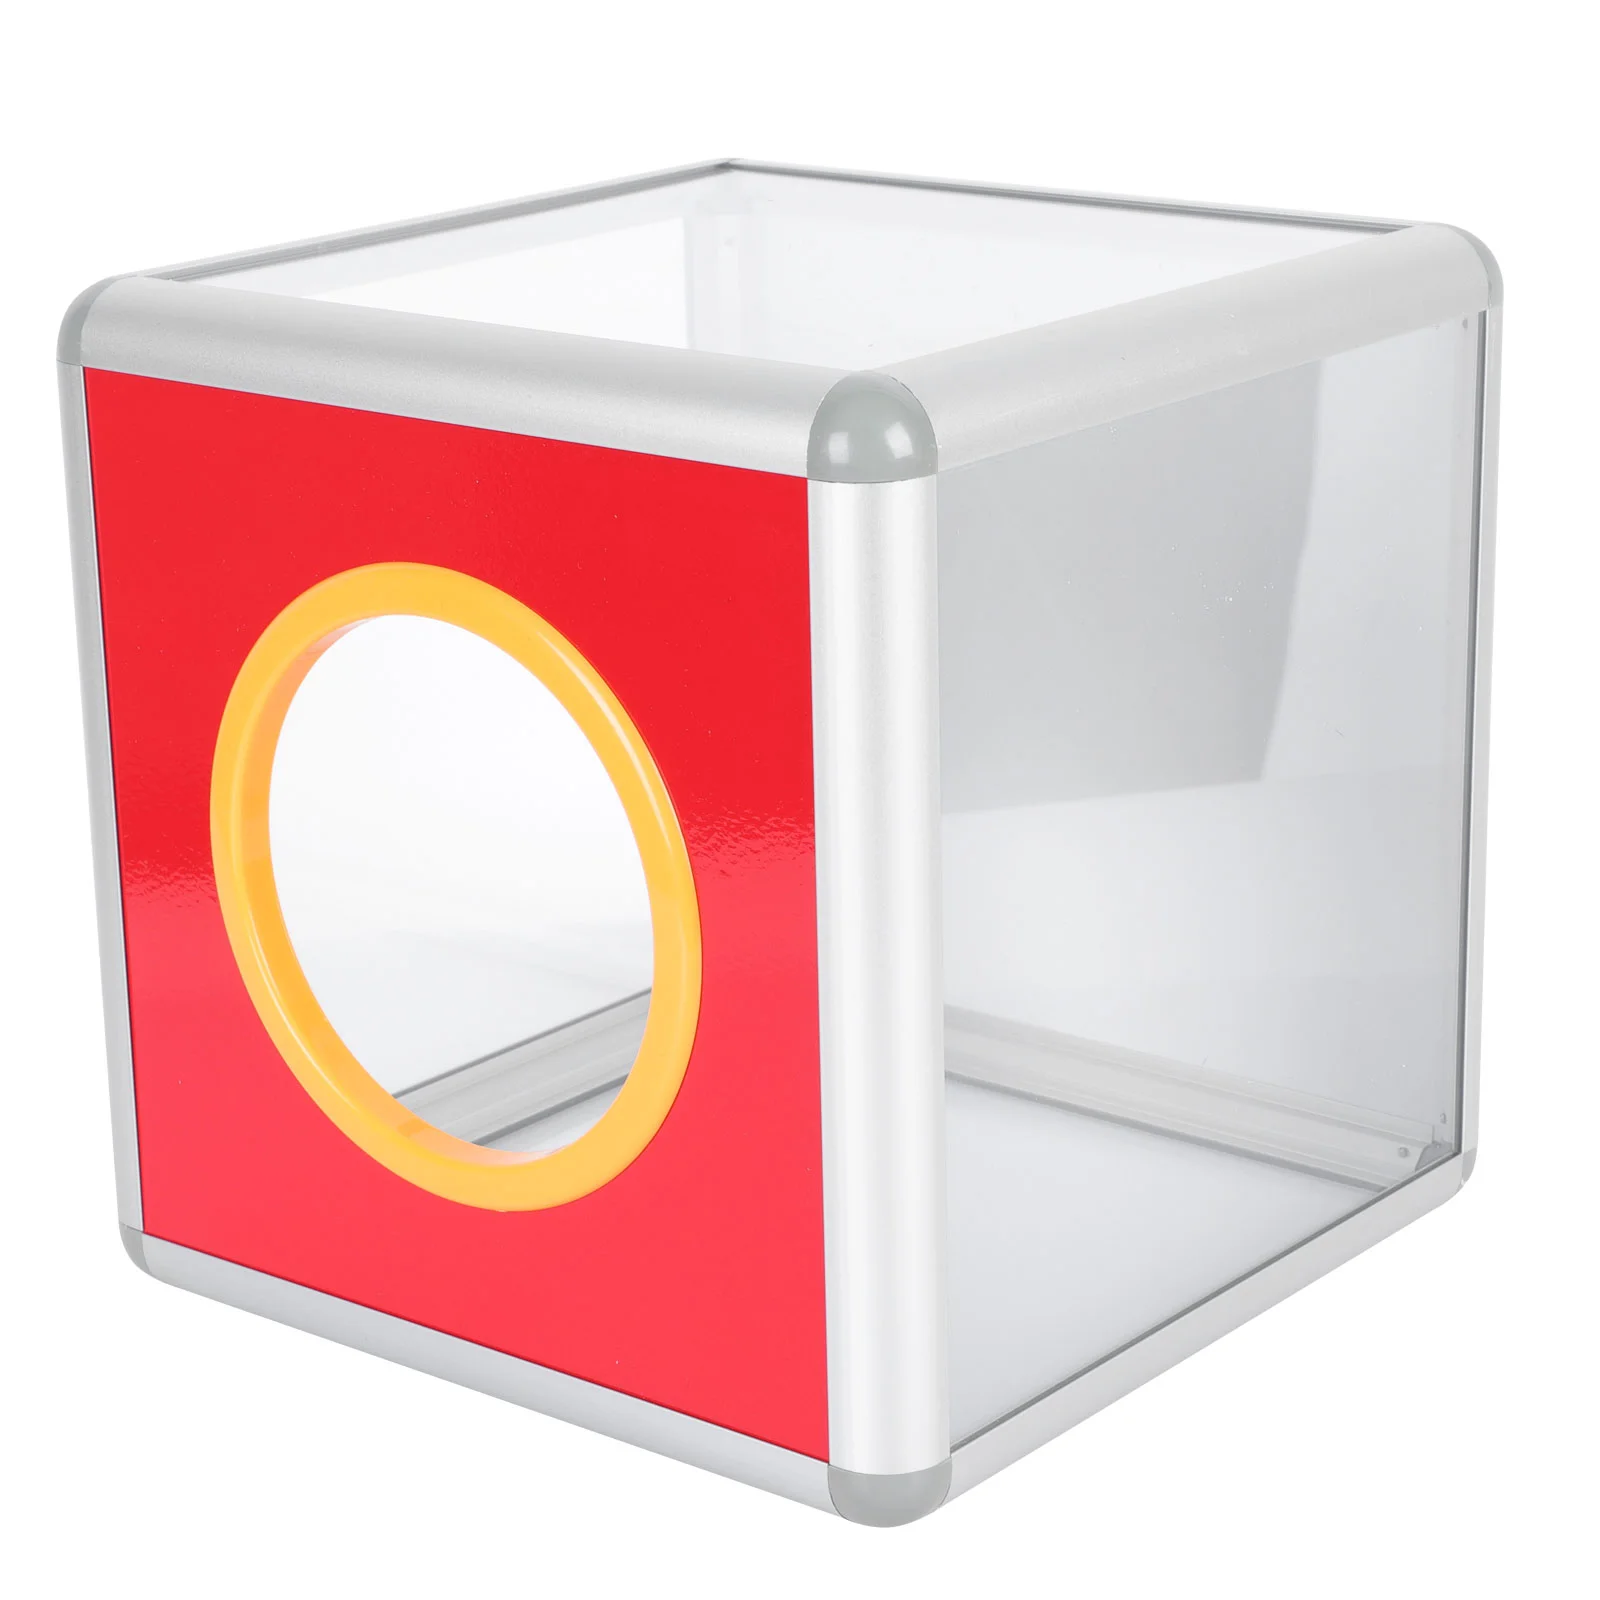 

Коробка для подарков, прозрачная коробка для предложения из алюминиевого сплава, урна для банкнот, 20 см